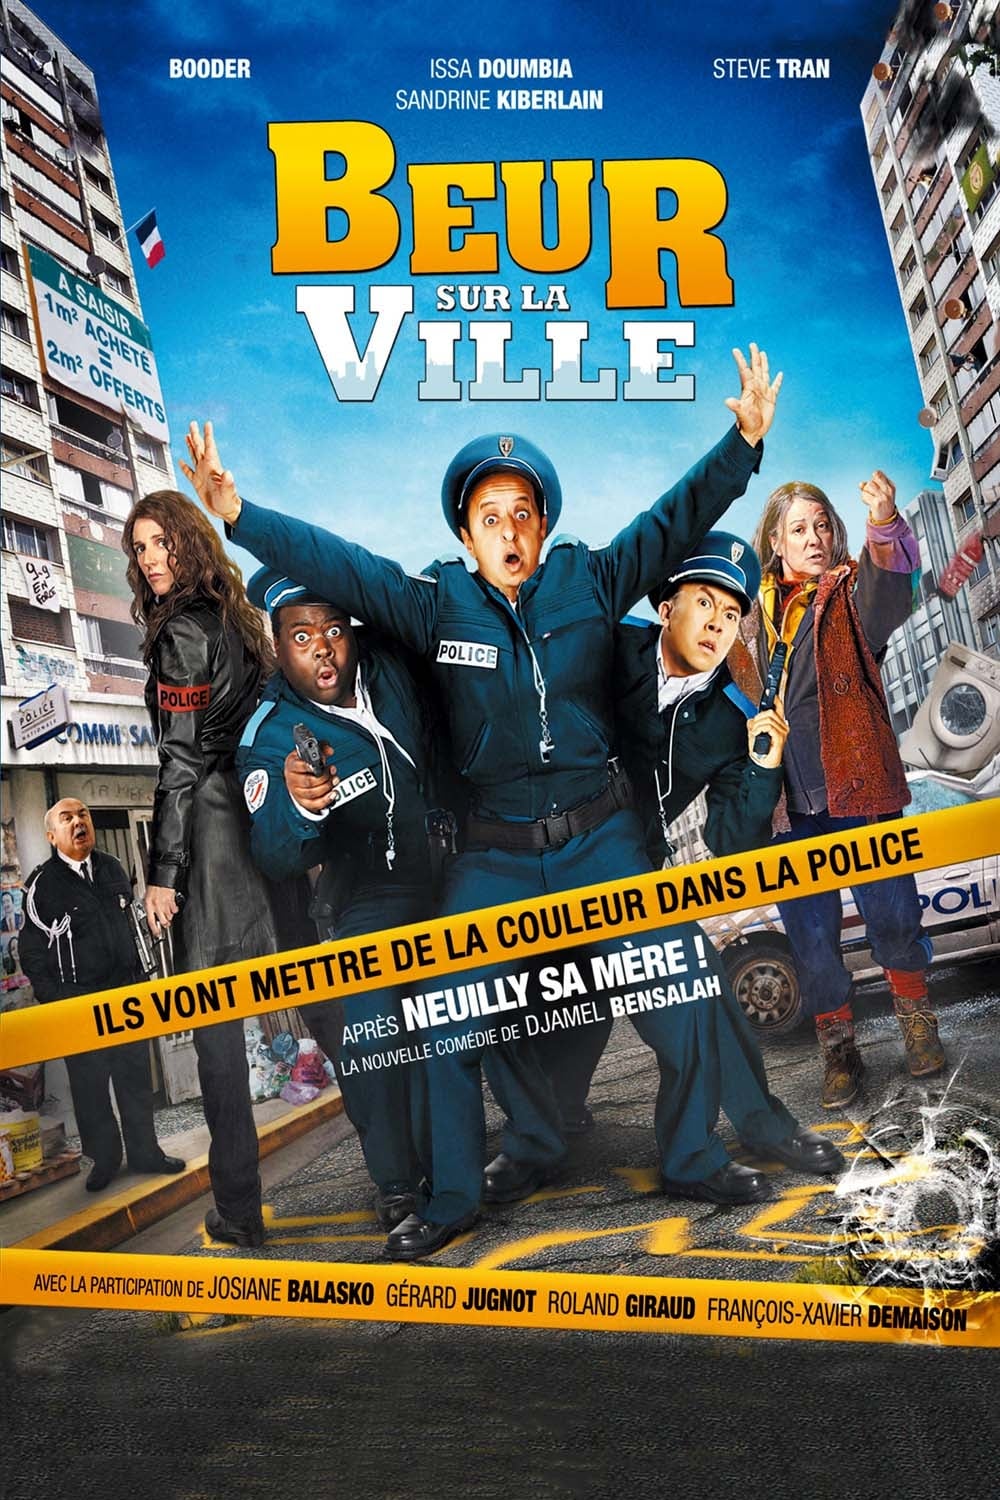 Plakat von "Beur sur la ville"